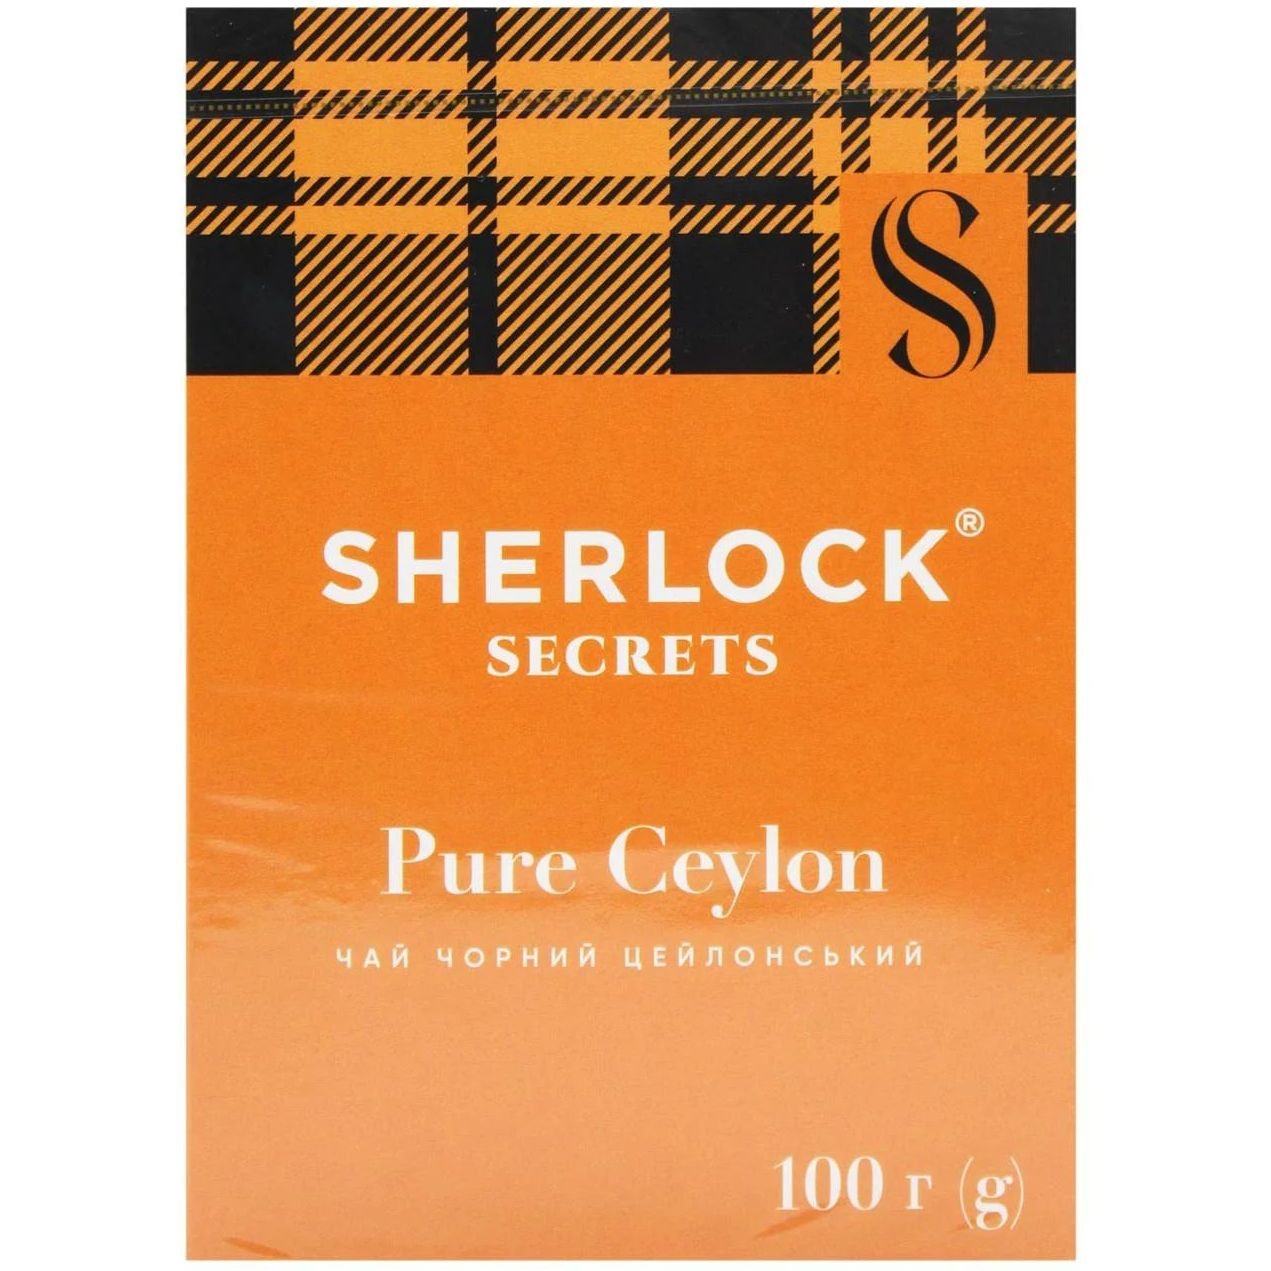 Чай чорний Sherlock Secrets Pure Ceylon цейлонський, 100 г (920153) - фото 1